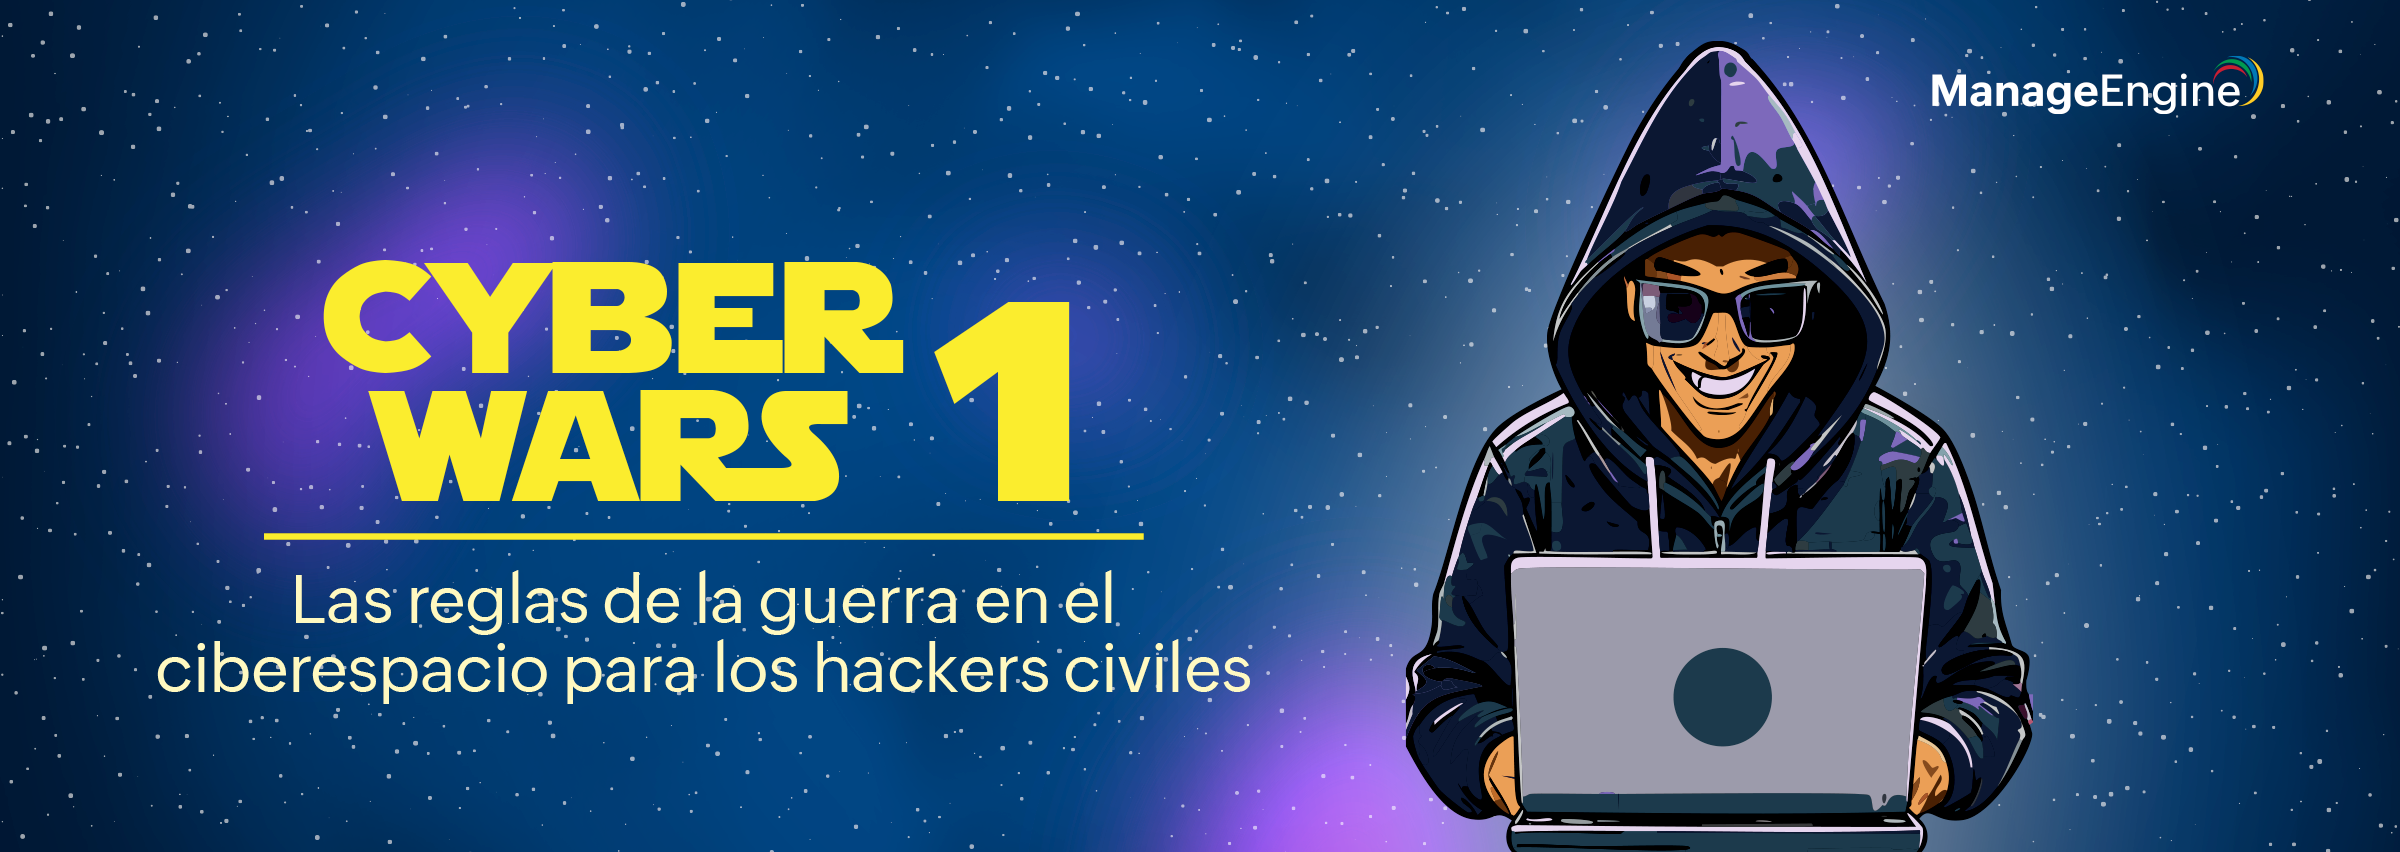 Cyberwars 1: Las reglas de la guerra en el ciberespacio para los hackers civiles 